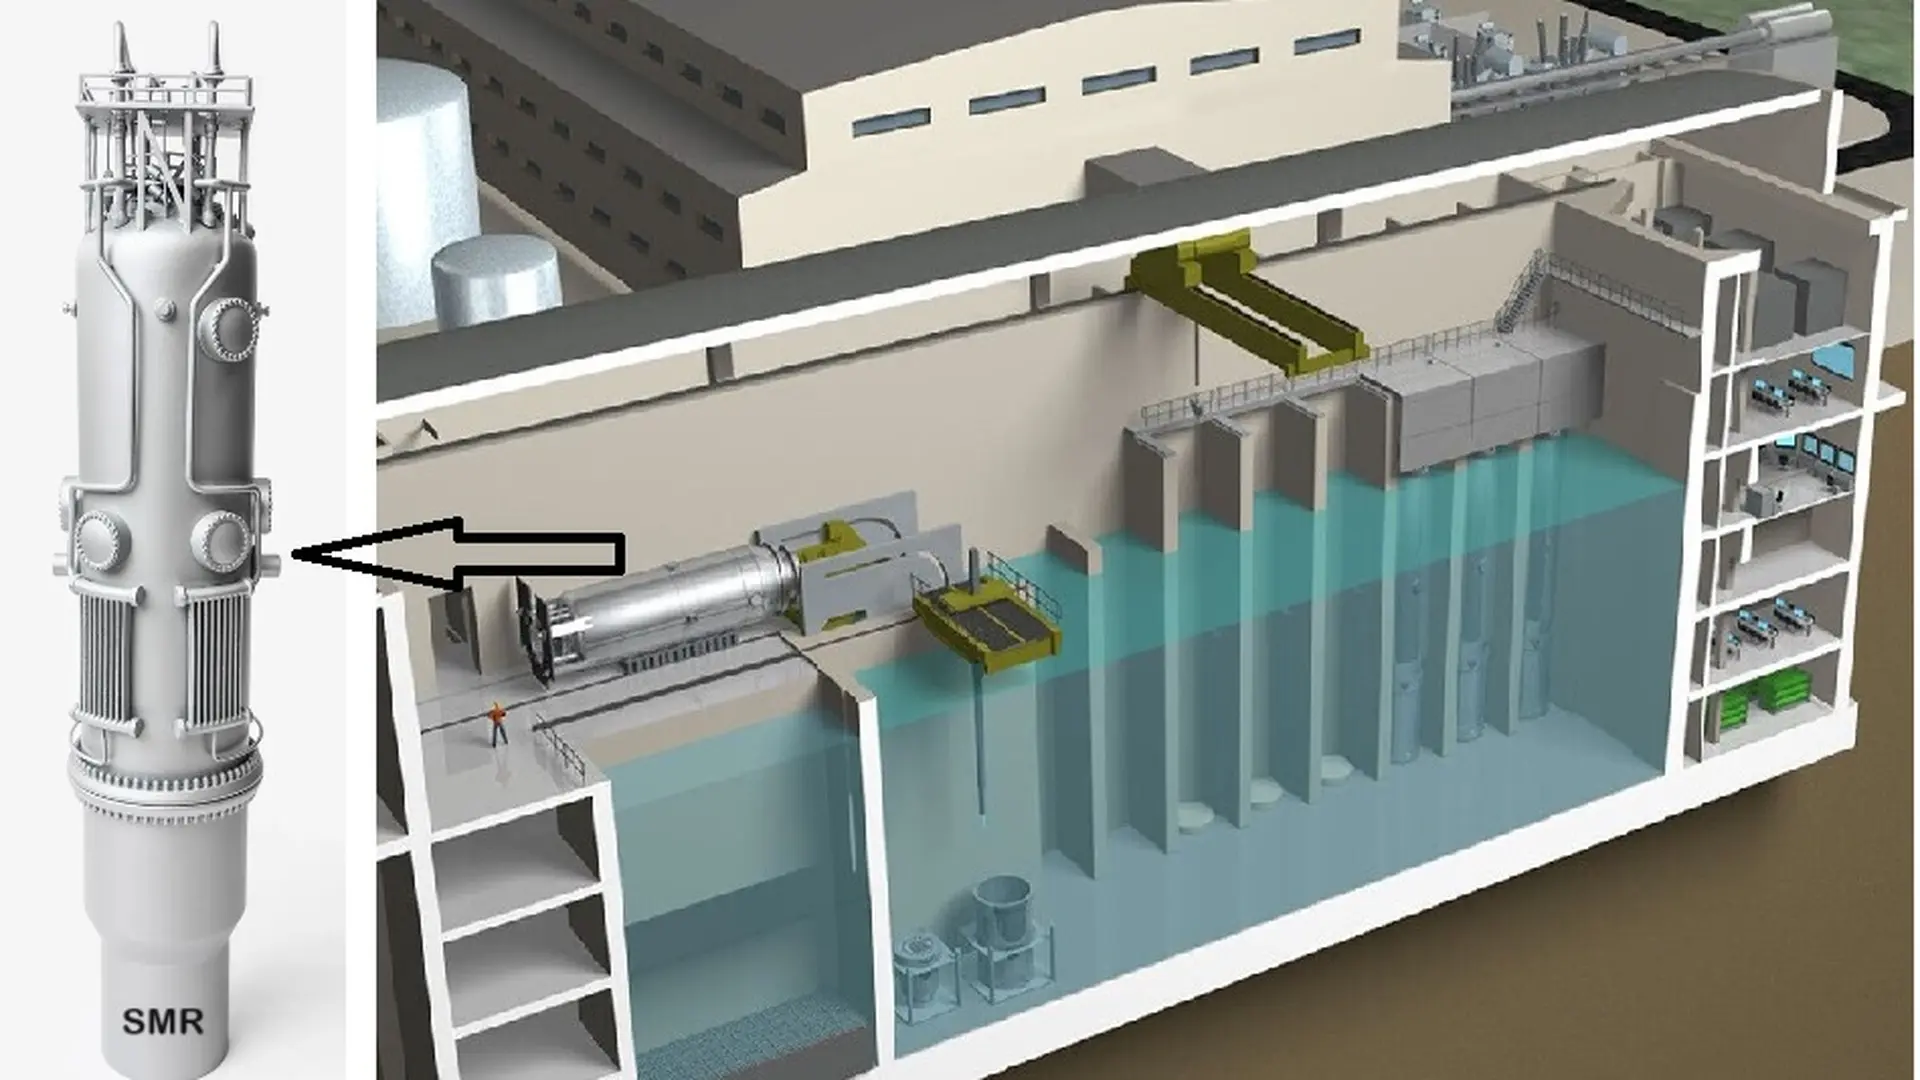 Energía nuclear: Reactor nuclear modular pequeño (SMR):